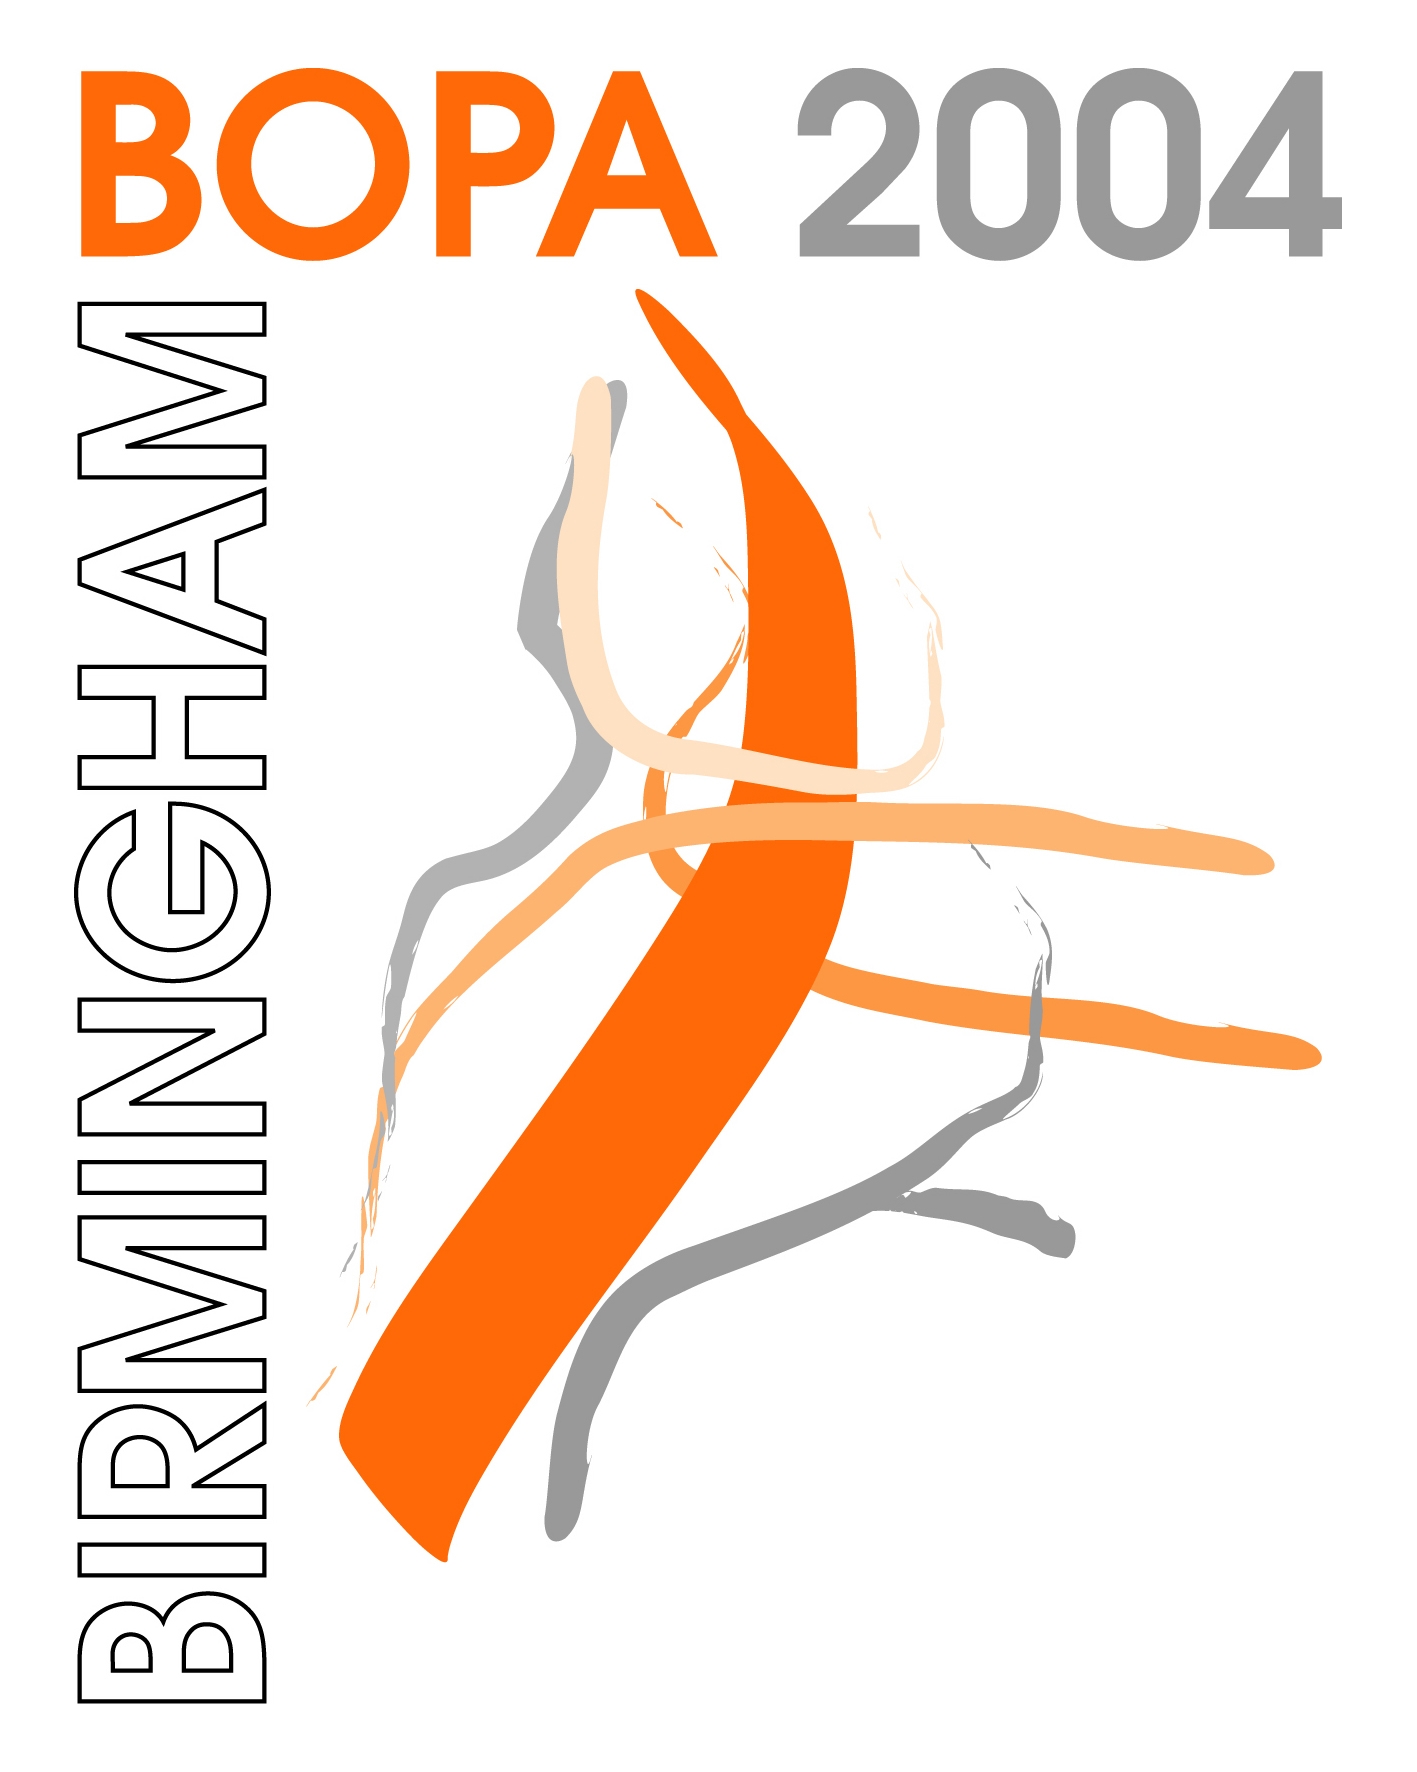 7th Annual BOPA Symposium Birmingham 2004 logo